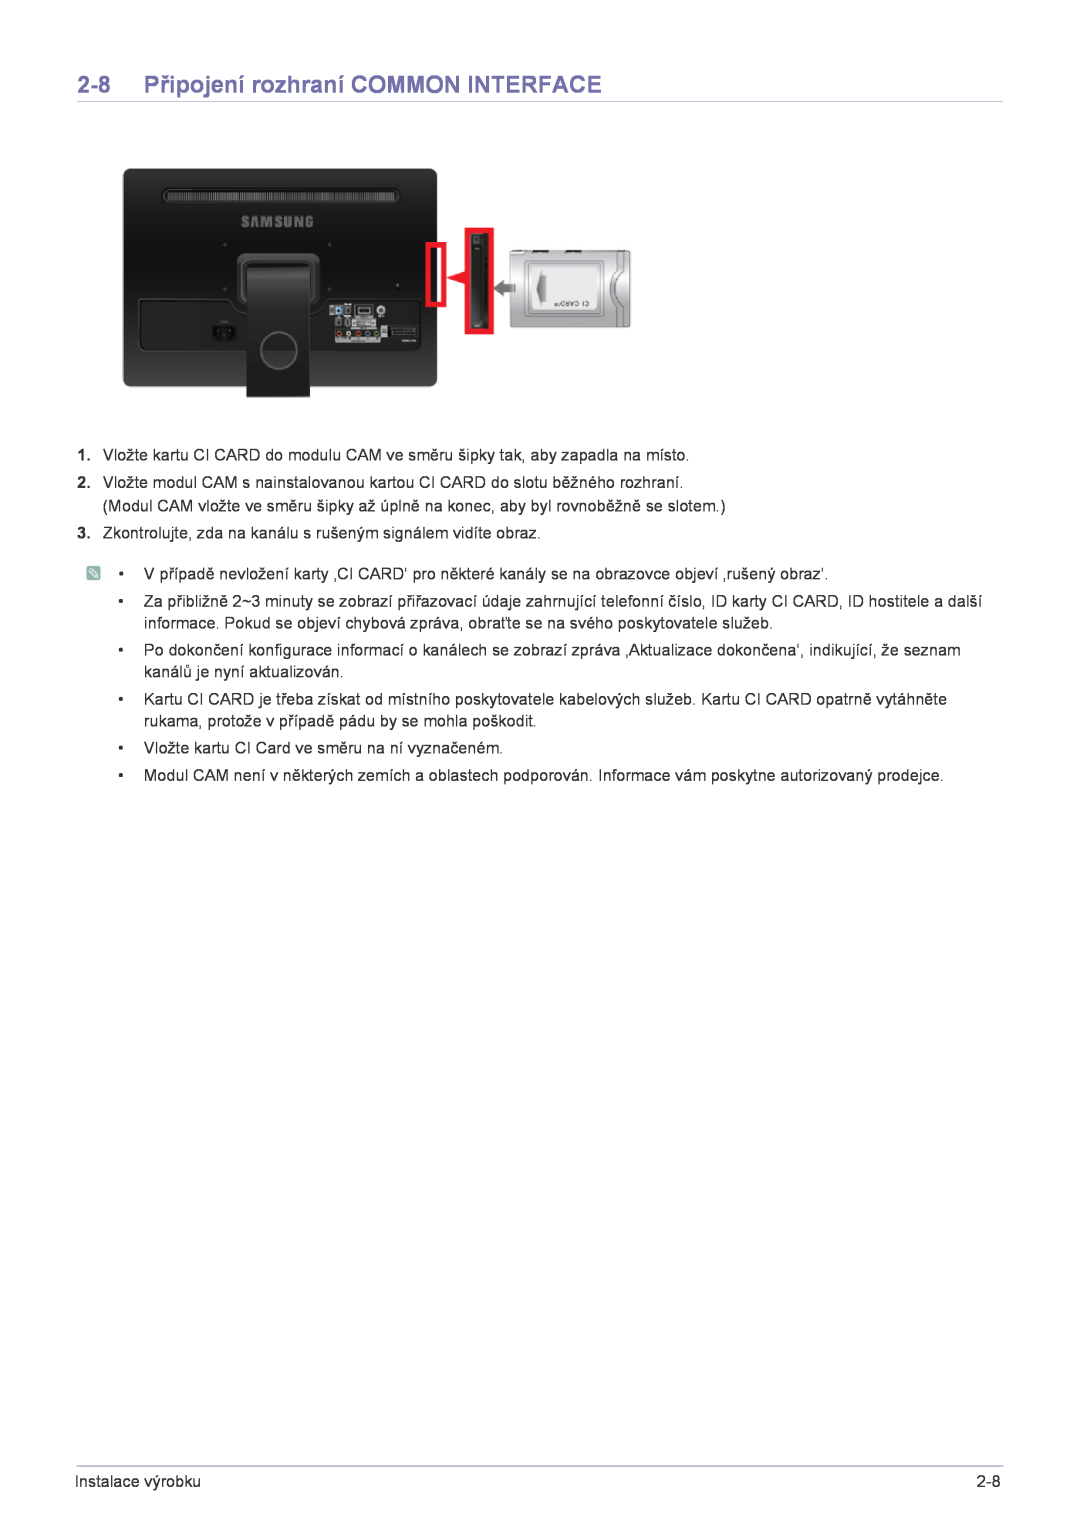 Samsung LS22FMDGF/EN manual 2-8 Připojení rozhraní COMMON INTERFACE 